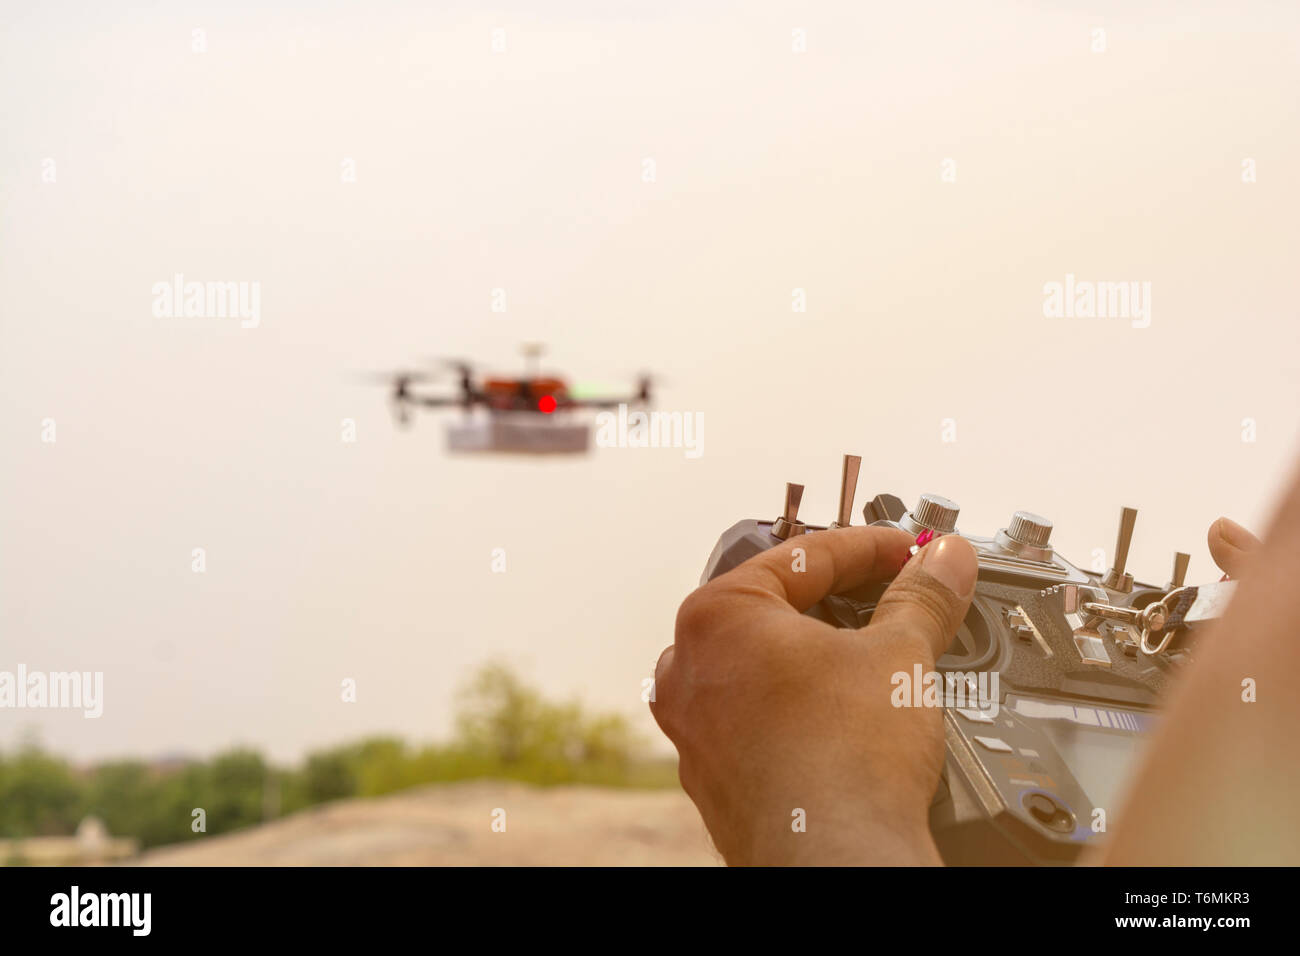 Closeup of hands opertaing drone émetteur, récepteur, contrôleur contrôleur à l'accent alors que bourdon est en dehors de la vue en arrière-plan. Banque D'Images